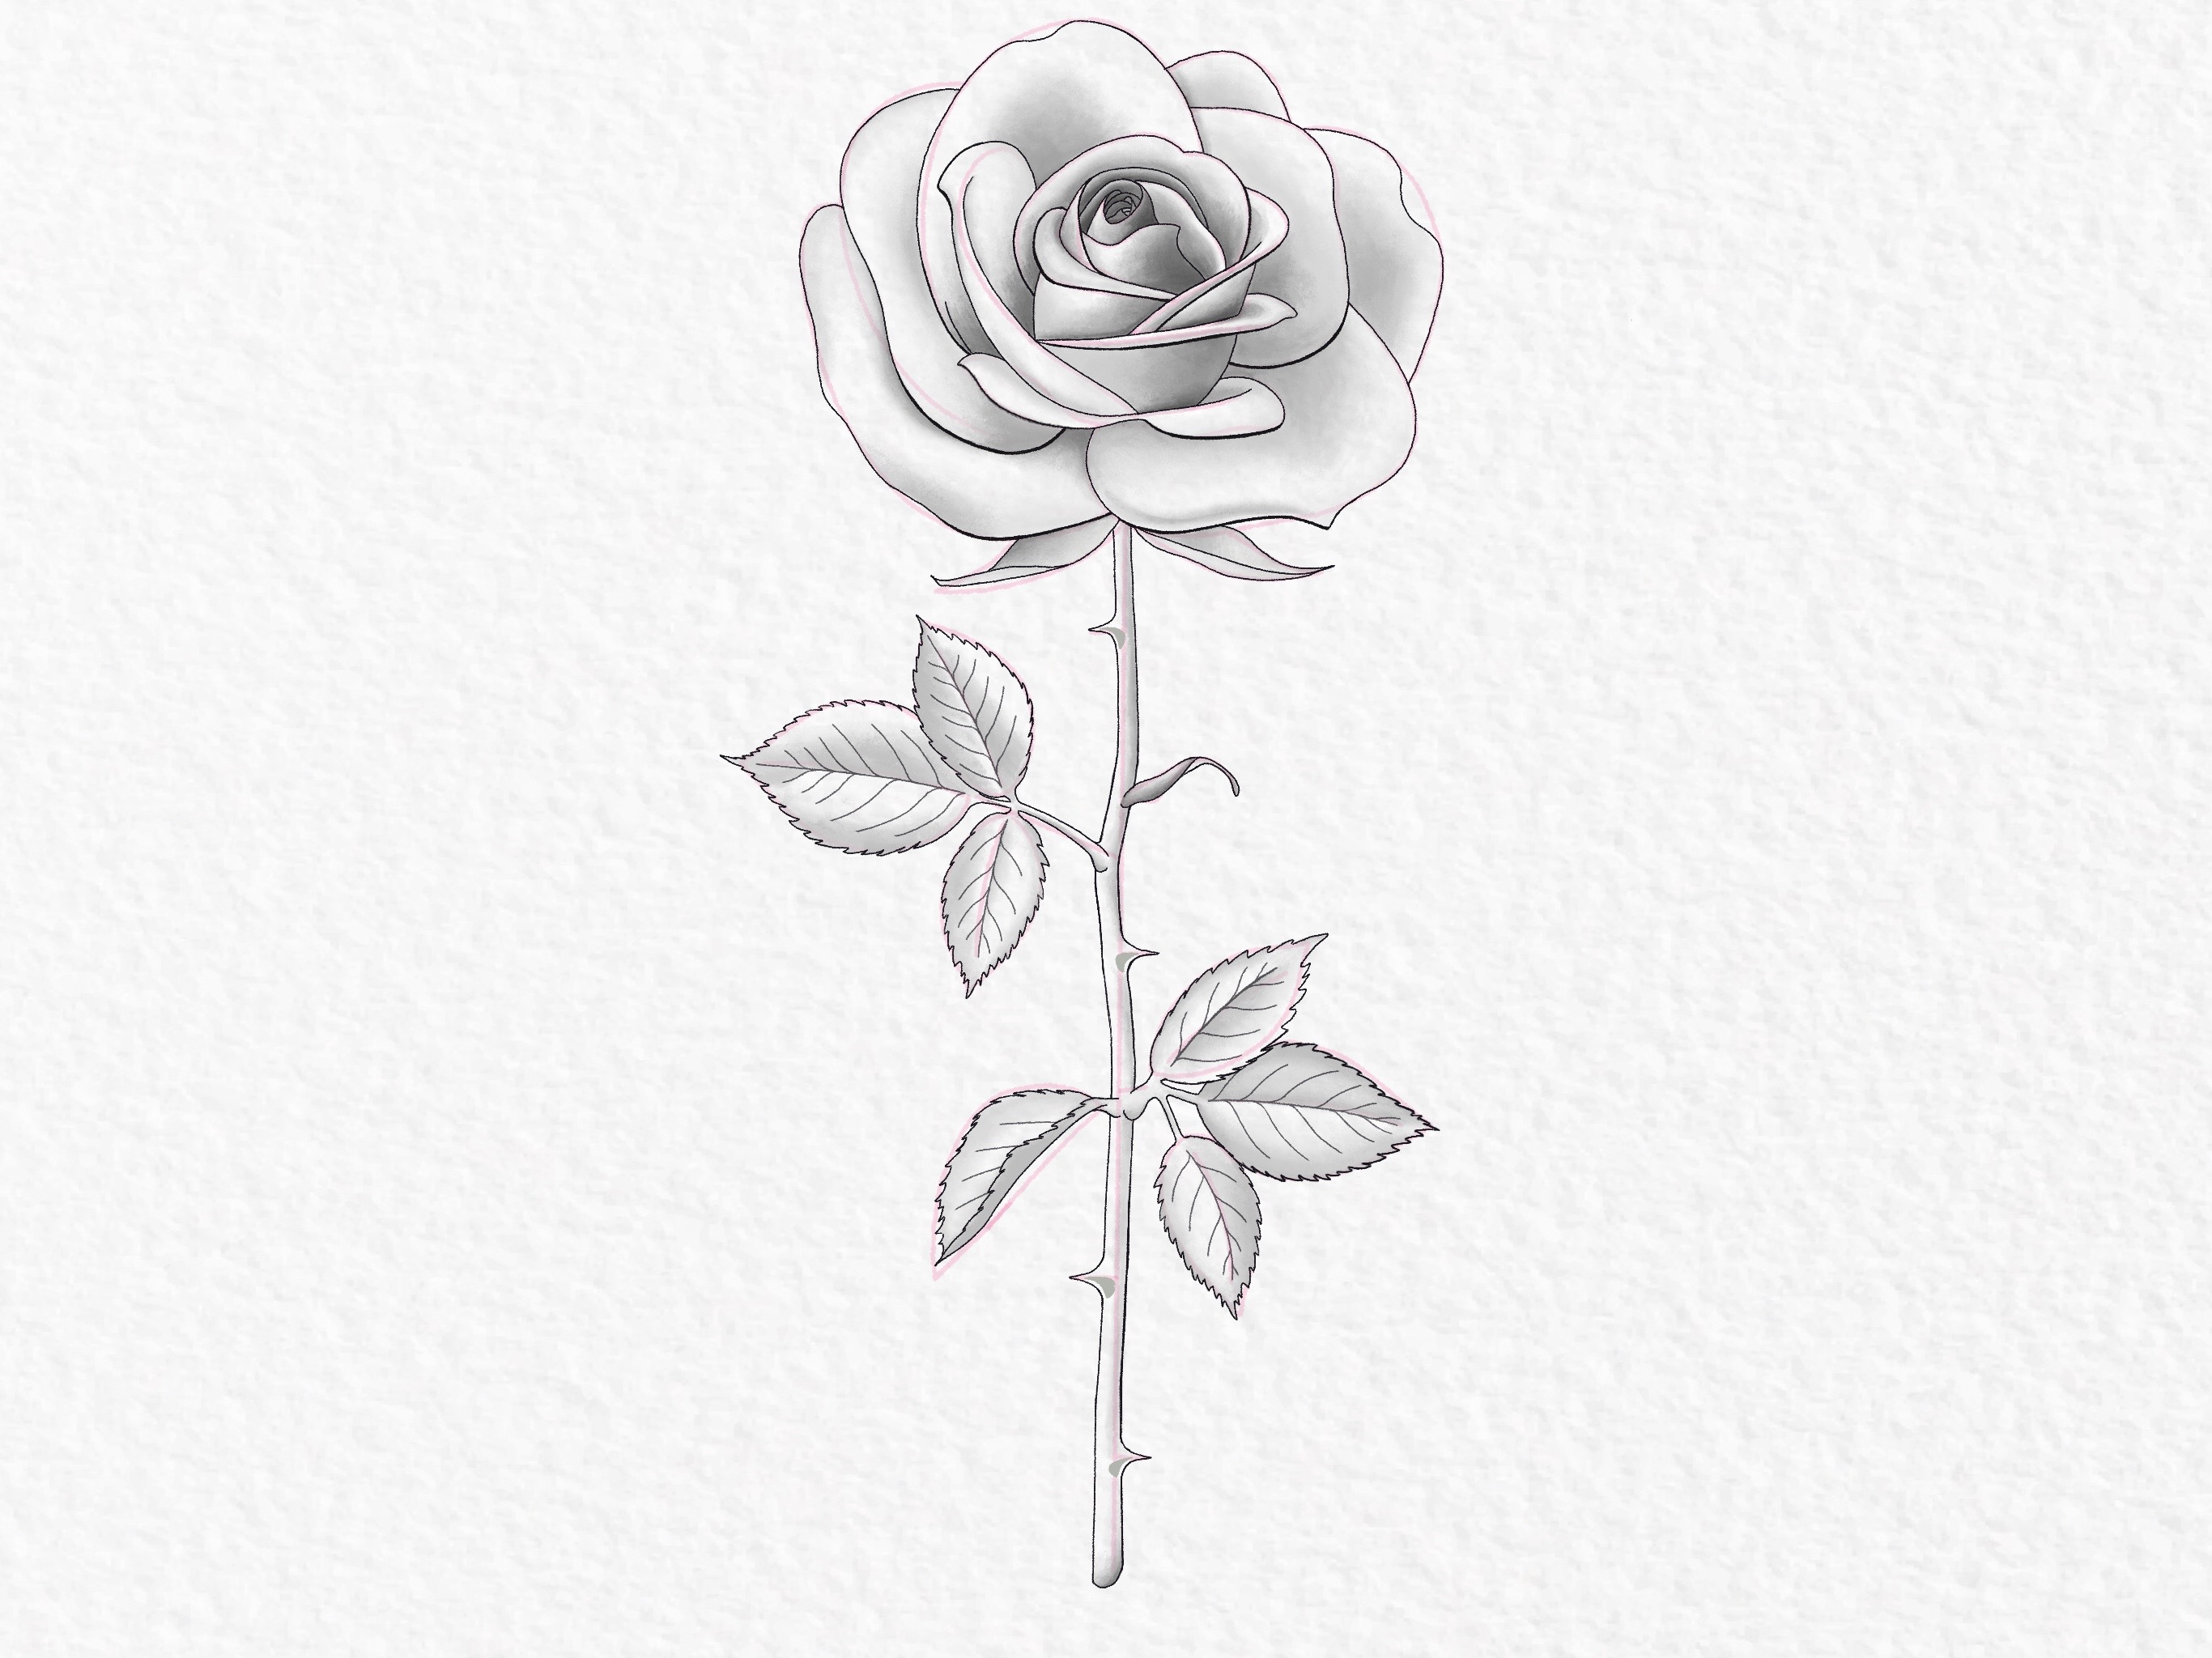 Rose Sketch Tattoo Design - Tattapic®